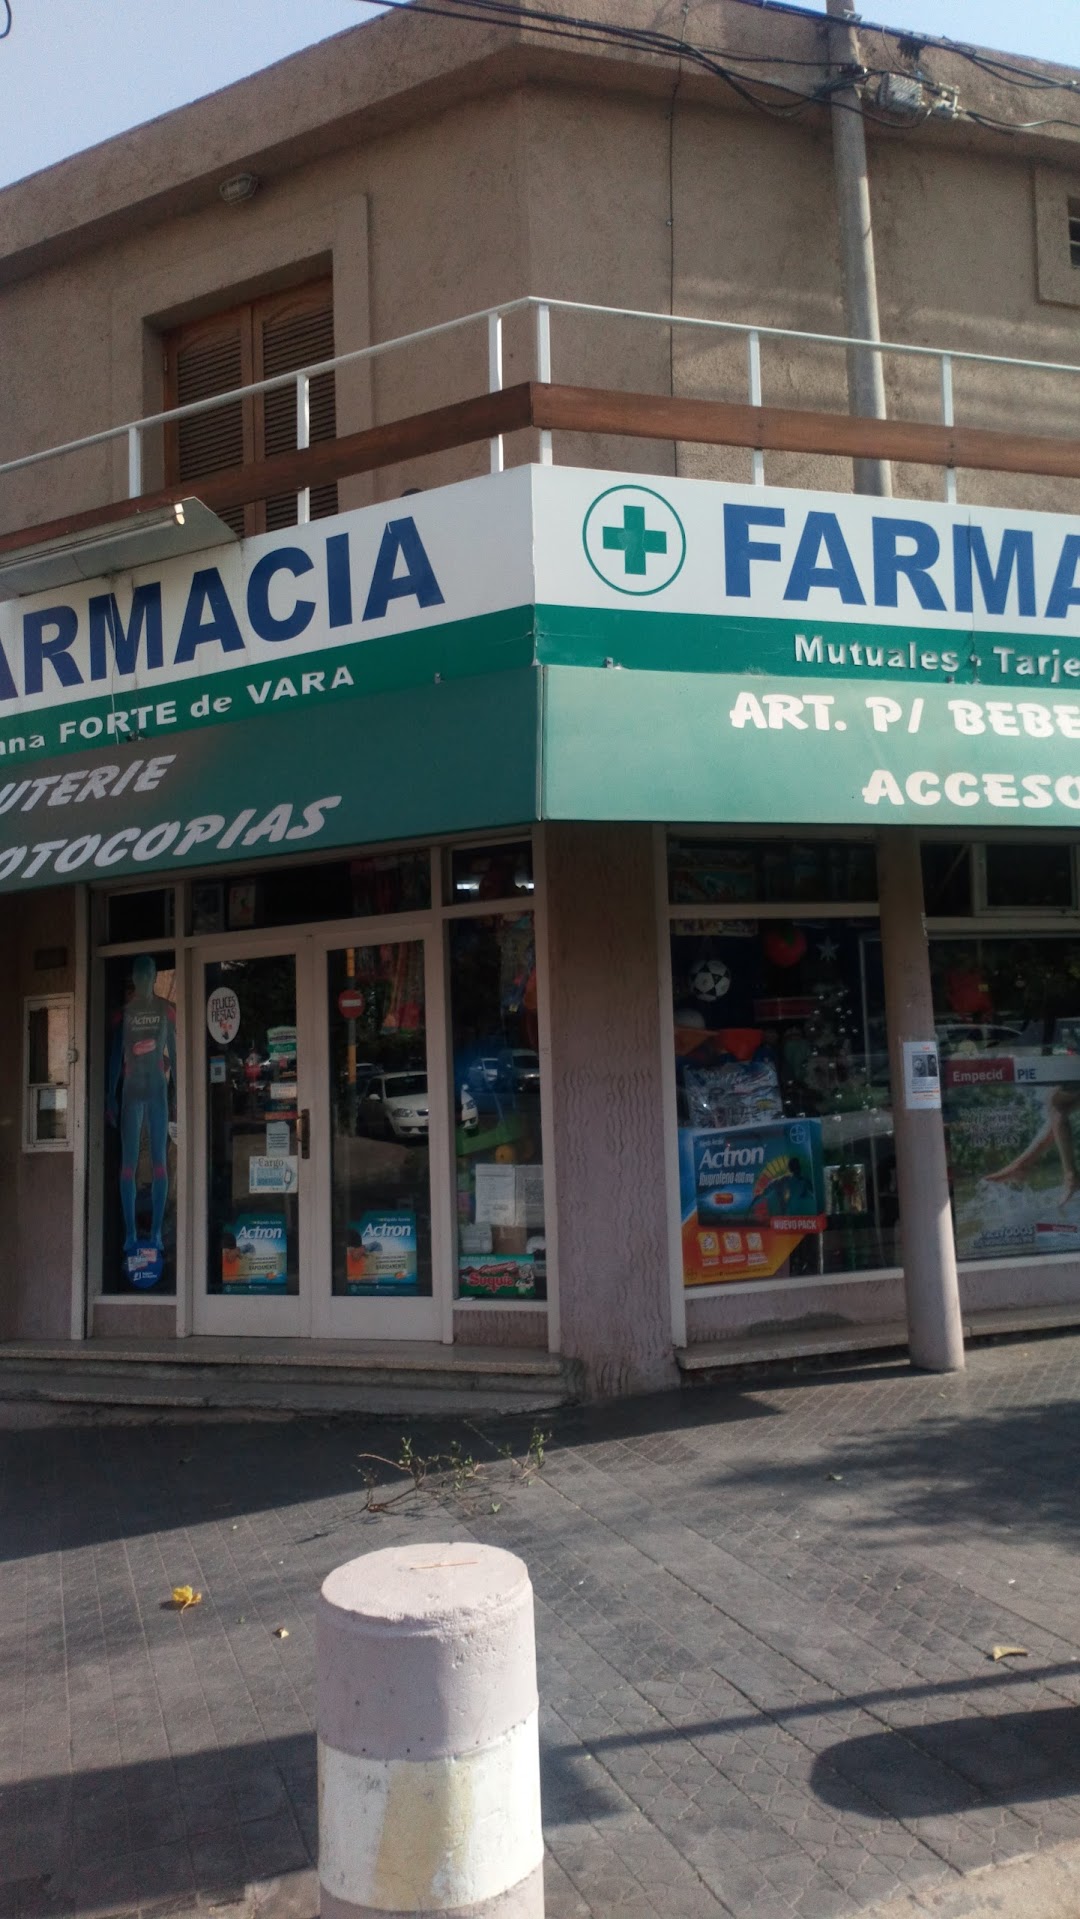 Farmacia Adriana Forte de Vara